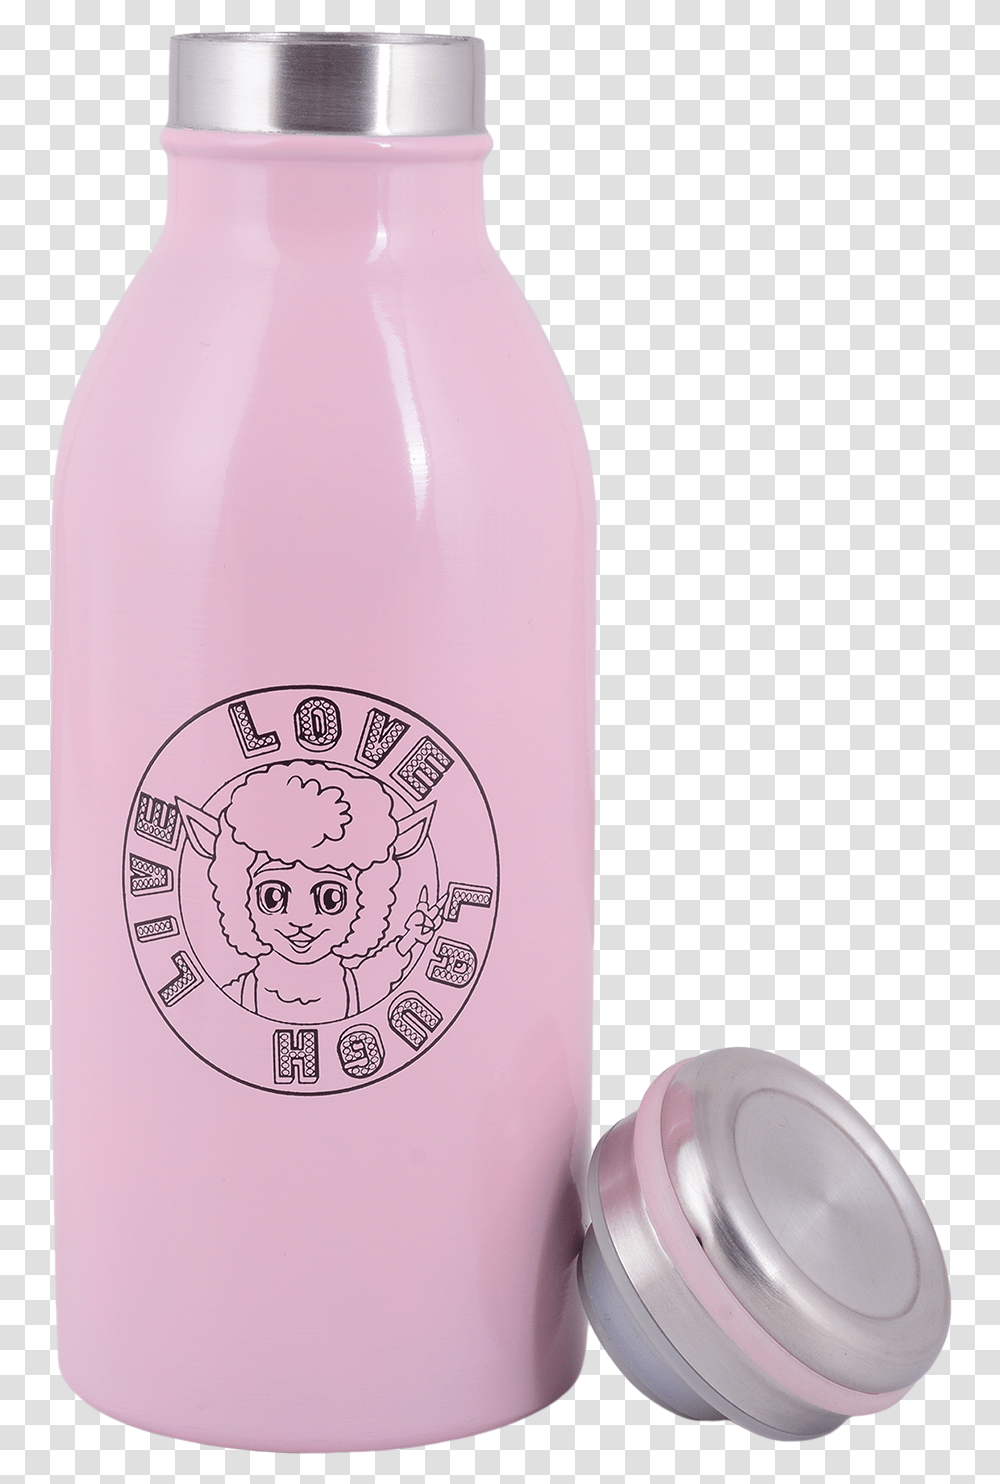 Live Love Laugh Bottle Water Bottle, Shaker, Milk, Beverage, Drink Transparent Png